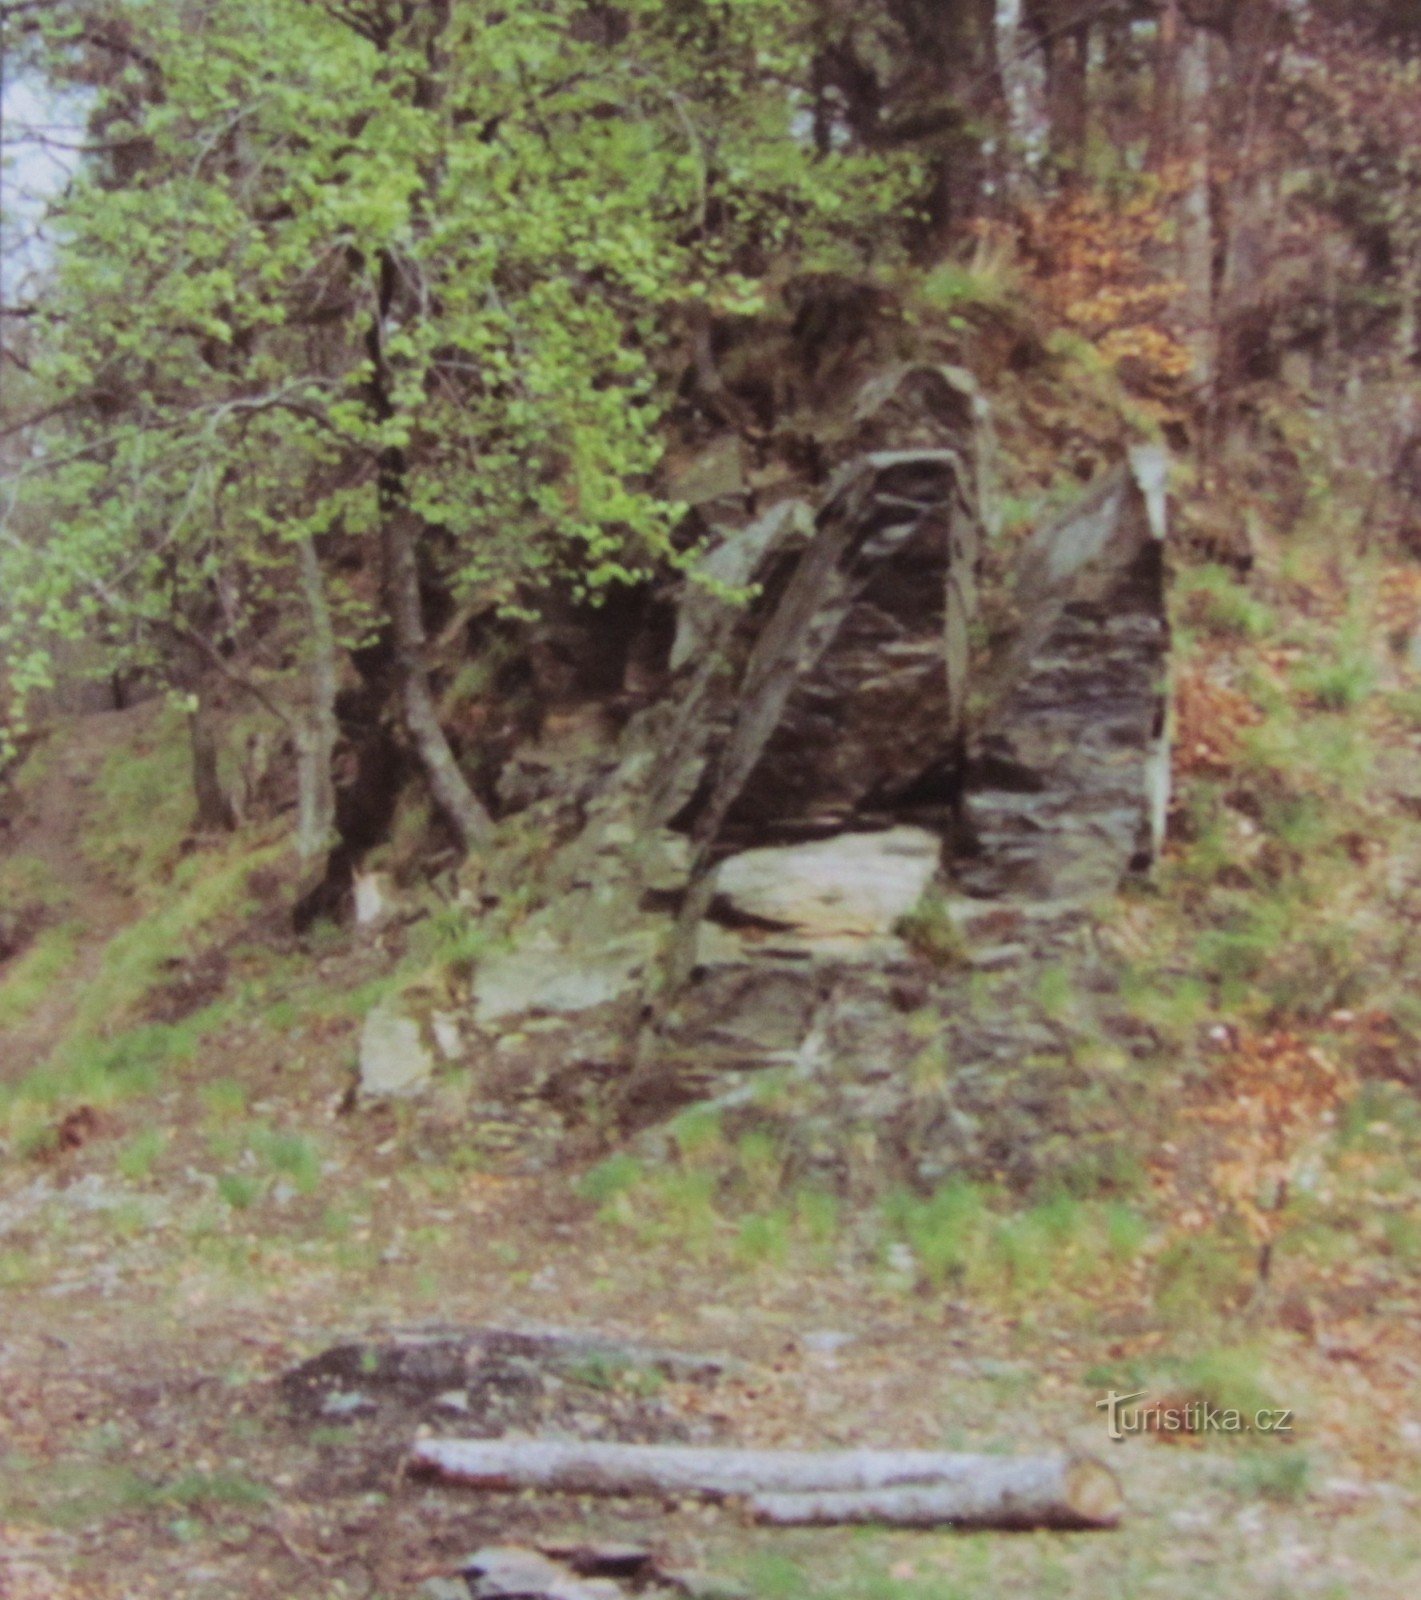 De la Hranice prin Potštátská skály până la ruinele Castelului Drahotuš (retro 1997)